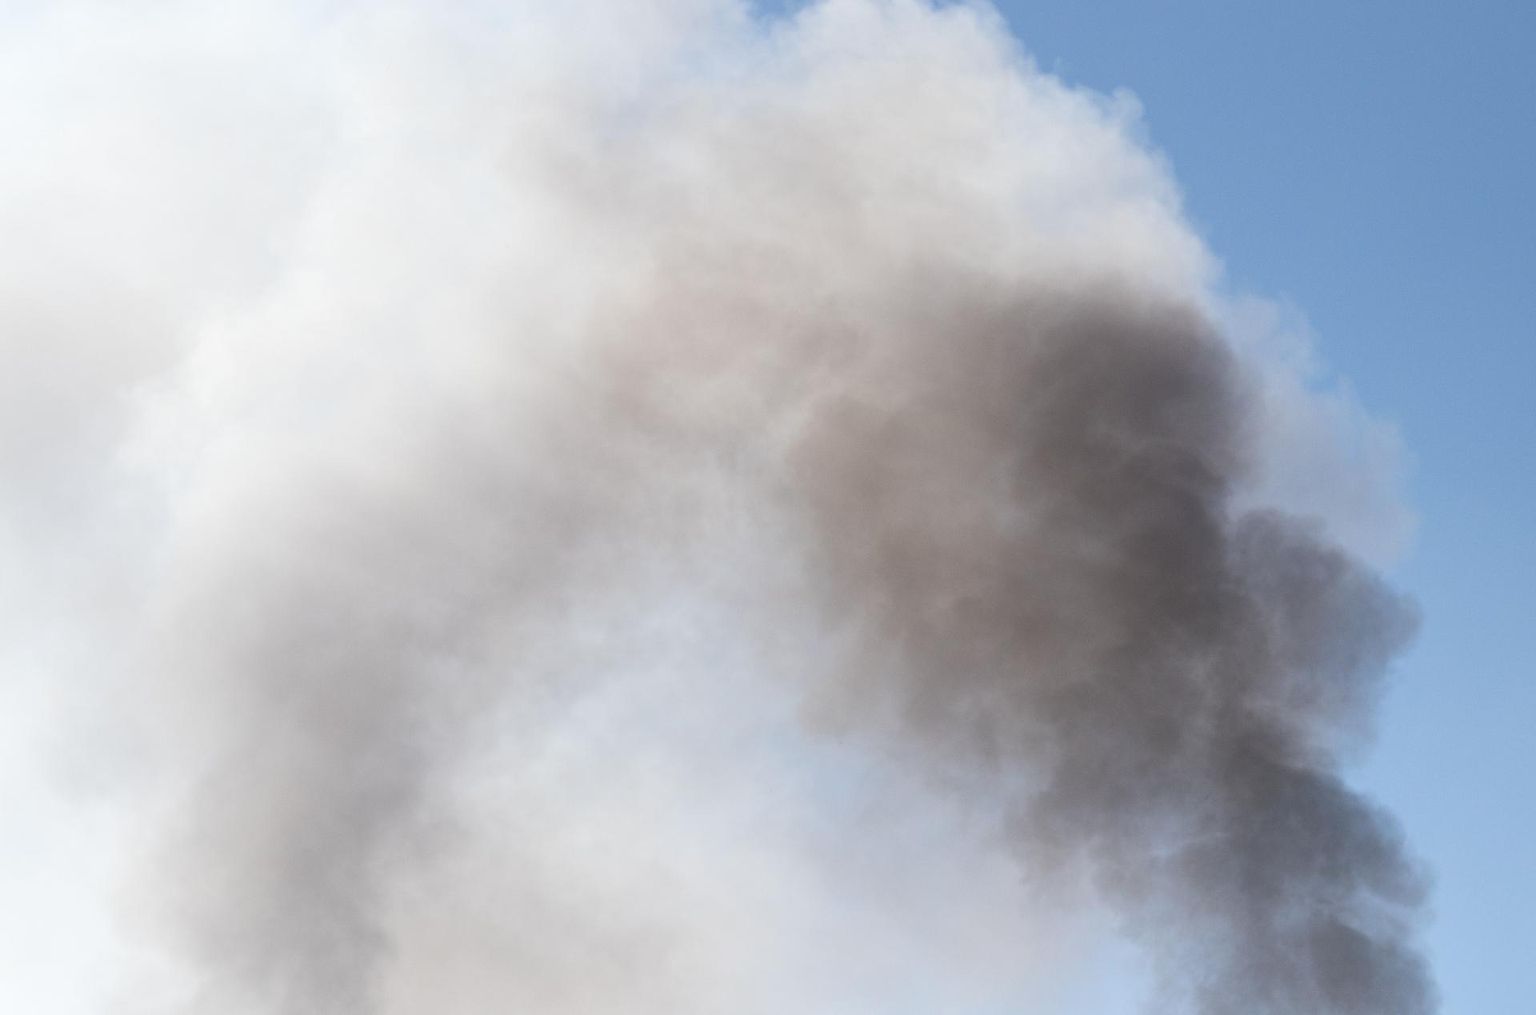 Ebasobiva materjali põletamisel tekkiv suits võib häirida kaaslinlasi. Pilt on illustreeriv.